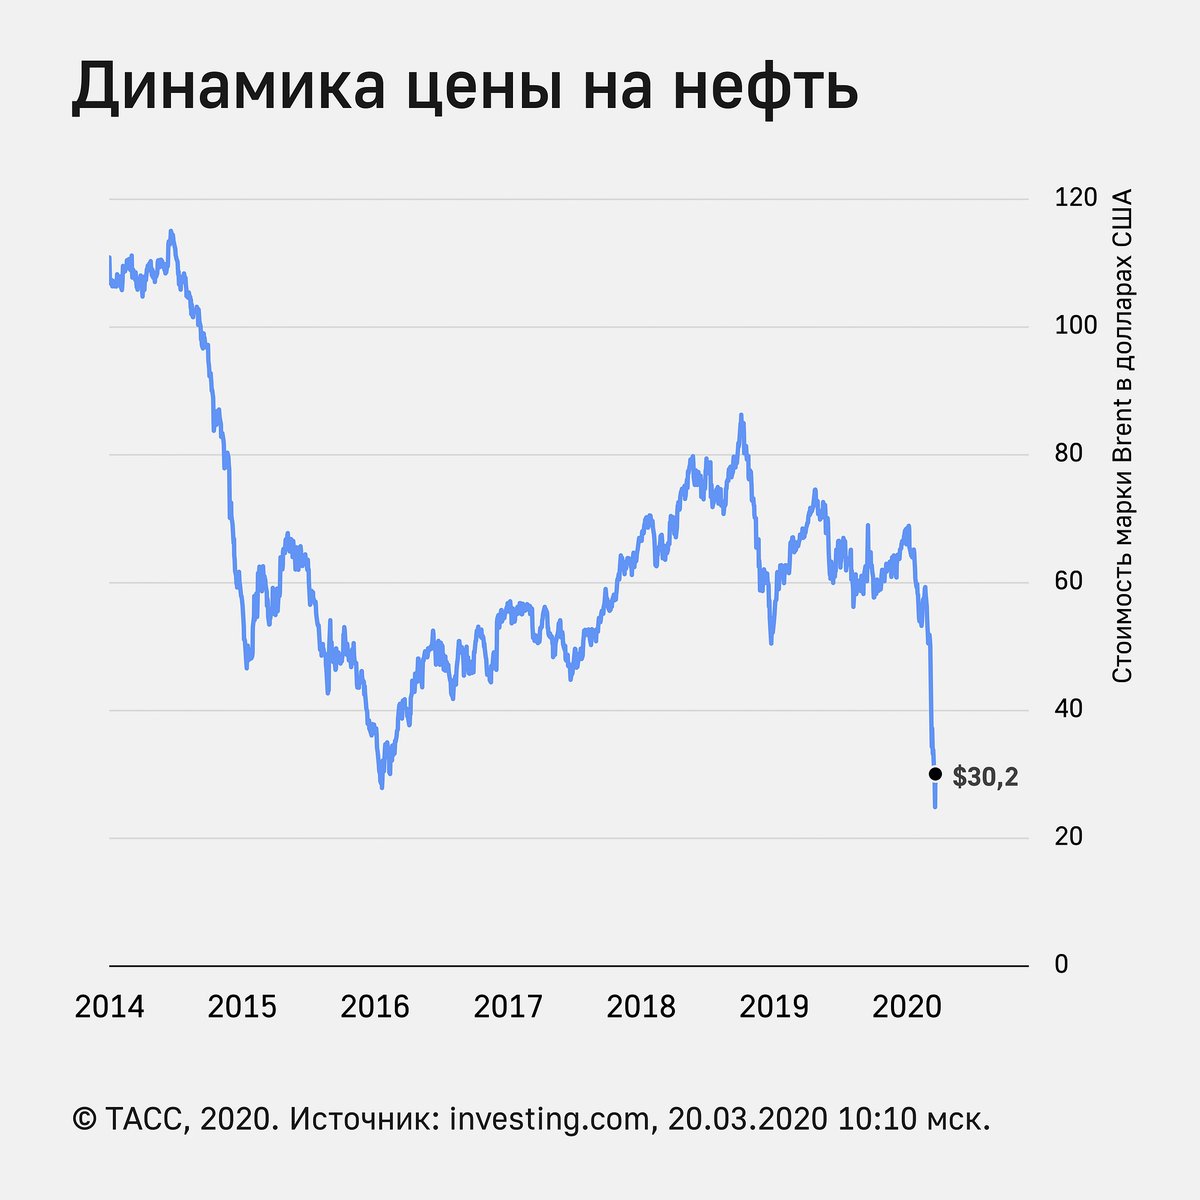 Ценовая динамика на нефть на мировом рынке. Нефть России 2020 график. Стоимость нефти график по годам. Падение спроса на нефть. Мировой рынок нефти.